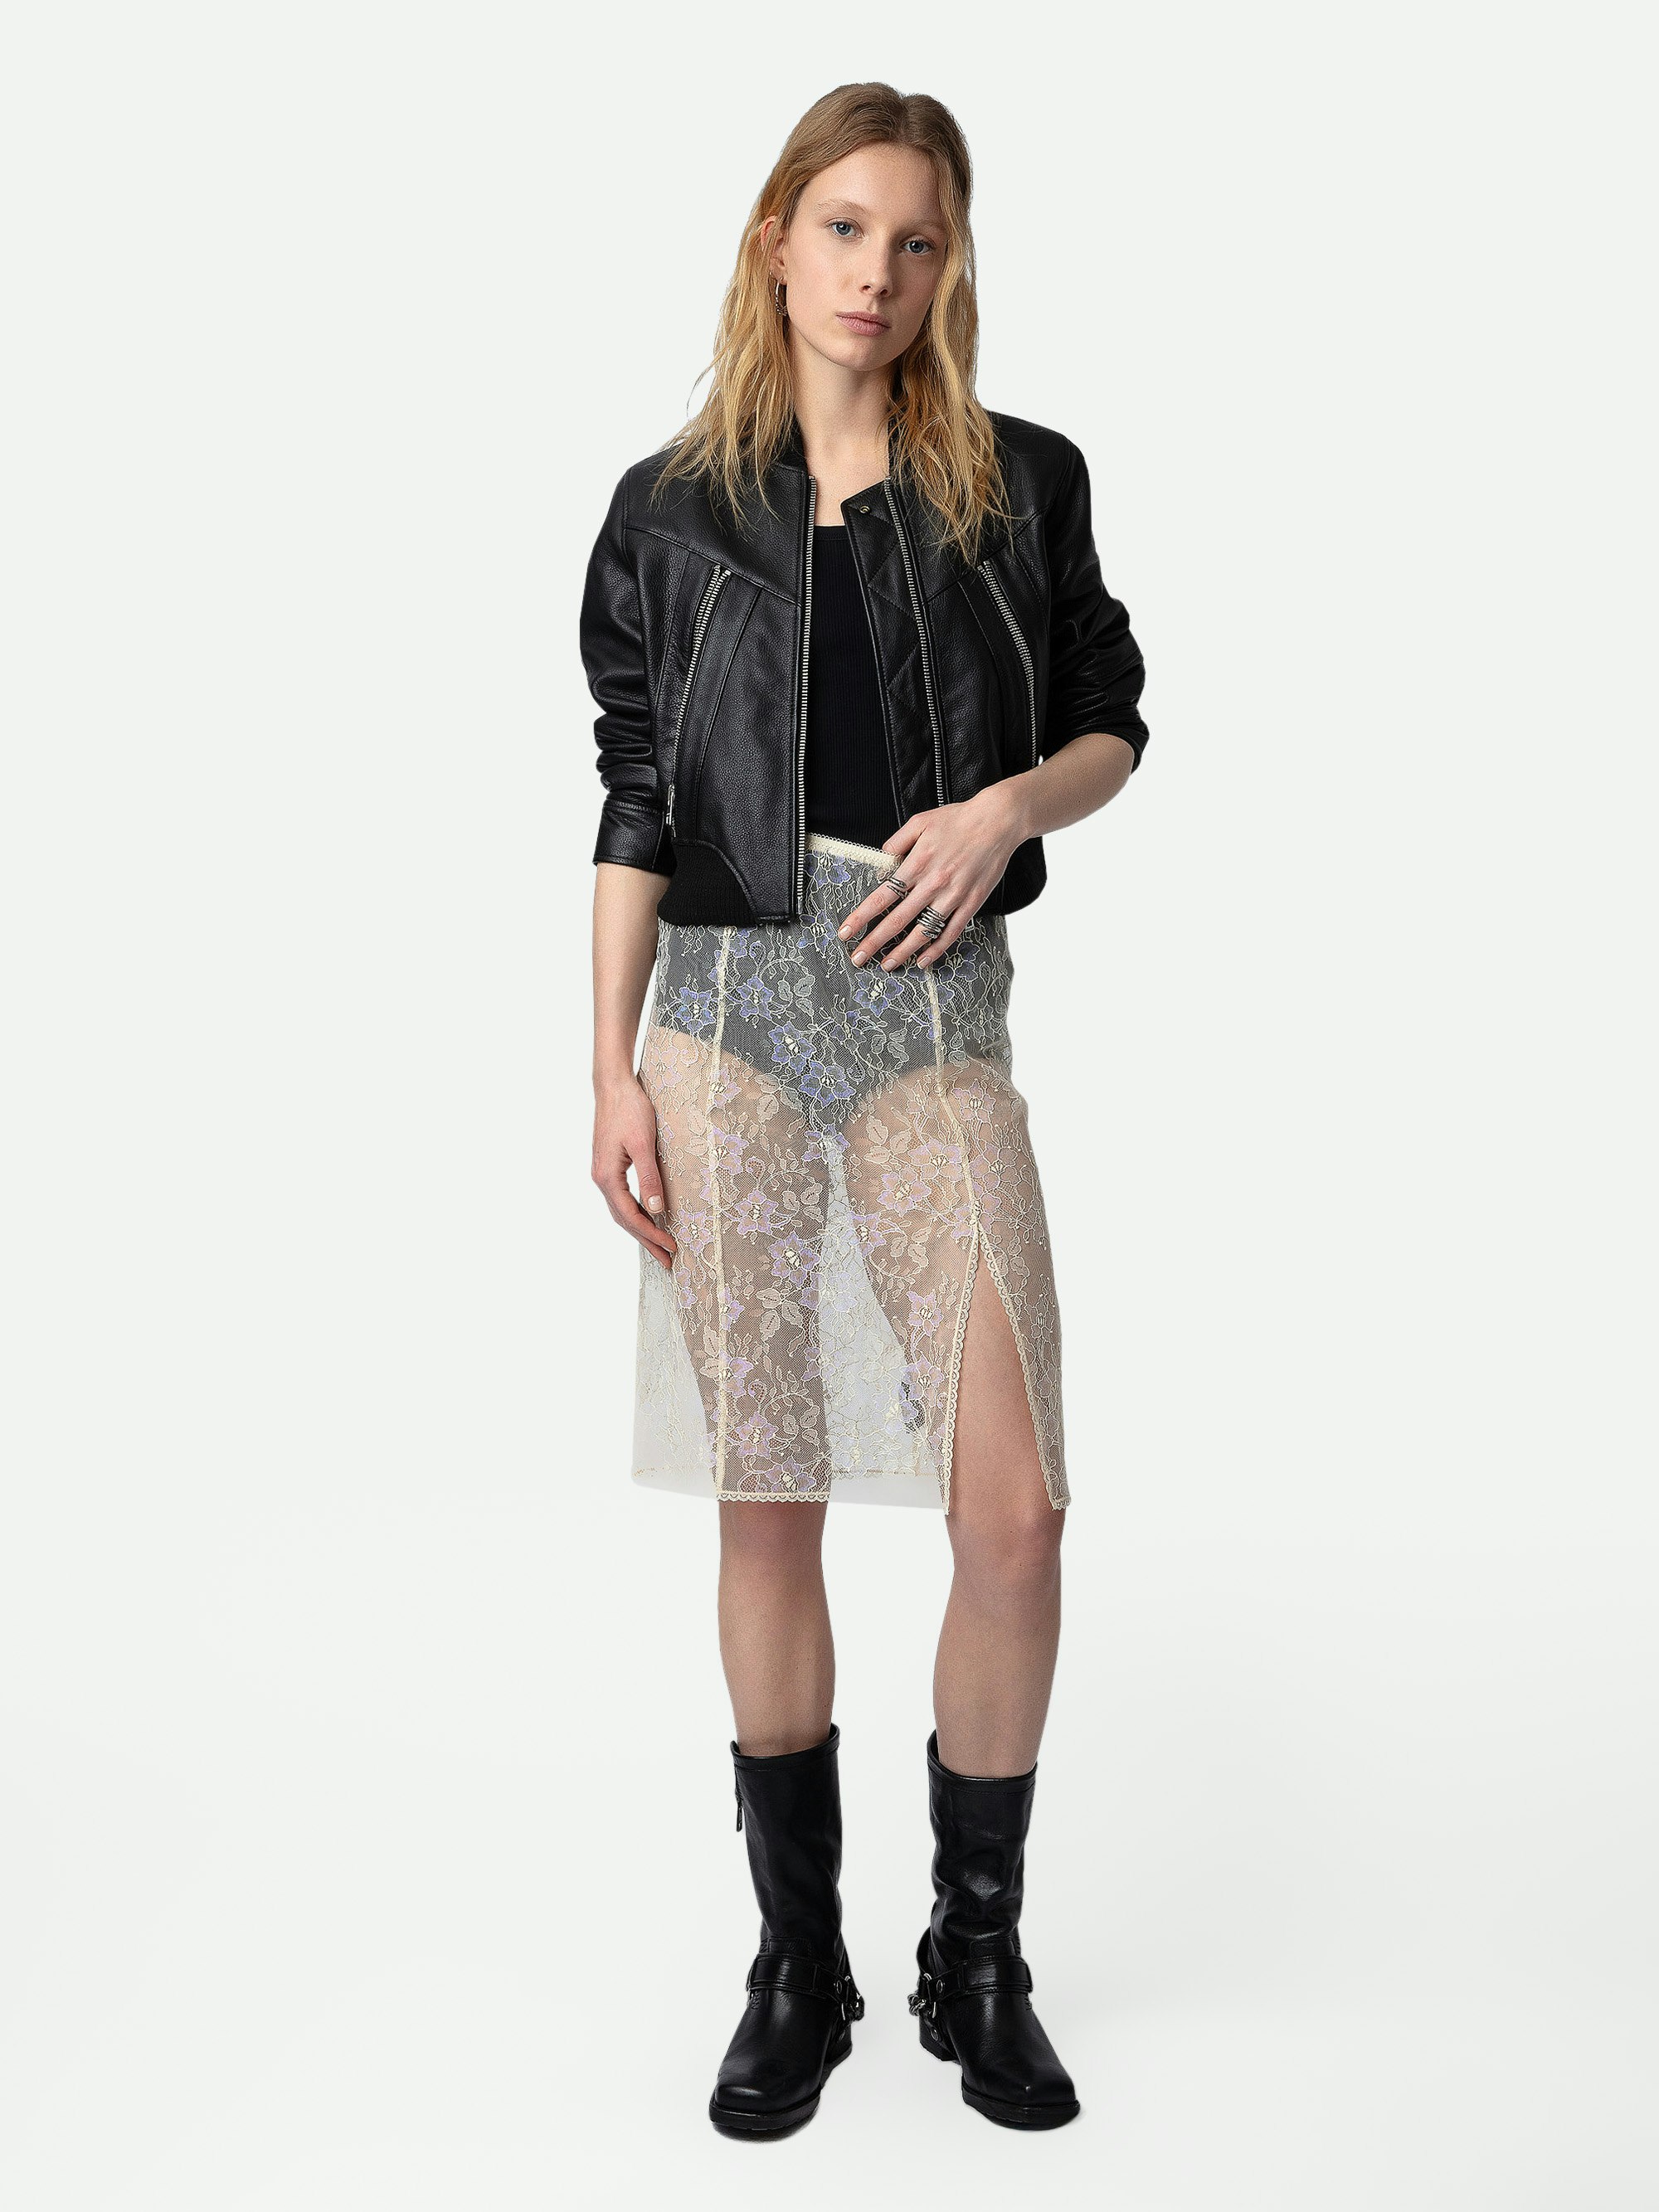 Falda Justicia - Falda de estilo lencero de largo medio en tono crudo con encaje floral.